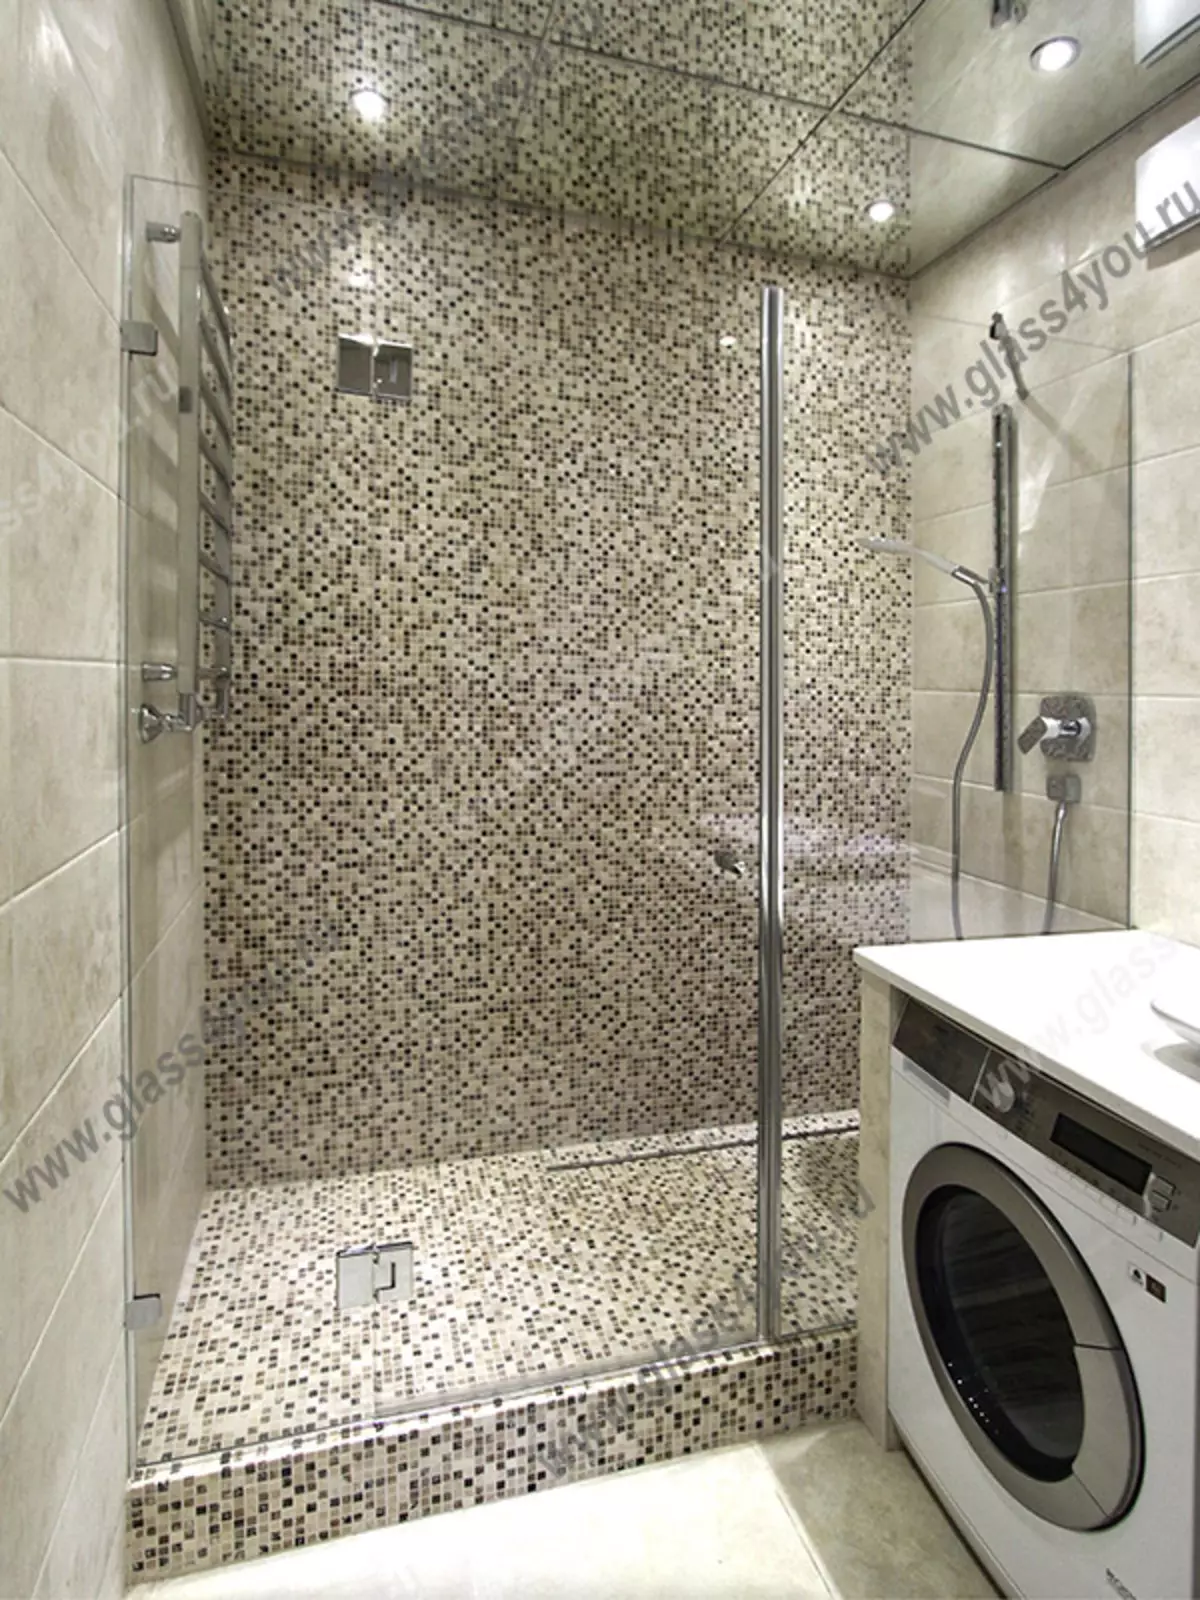 Dusj på badet uten hytte (86 bilder): Baderomsdesignalternativer med dusj uten pall og fliserhytter, prosjekter 21384_40